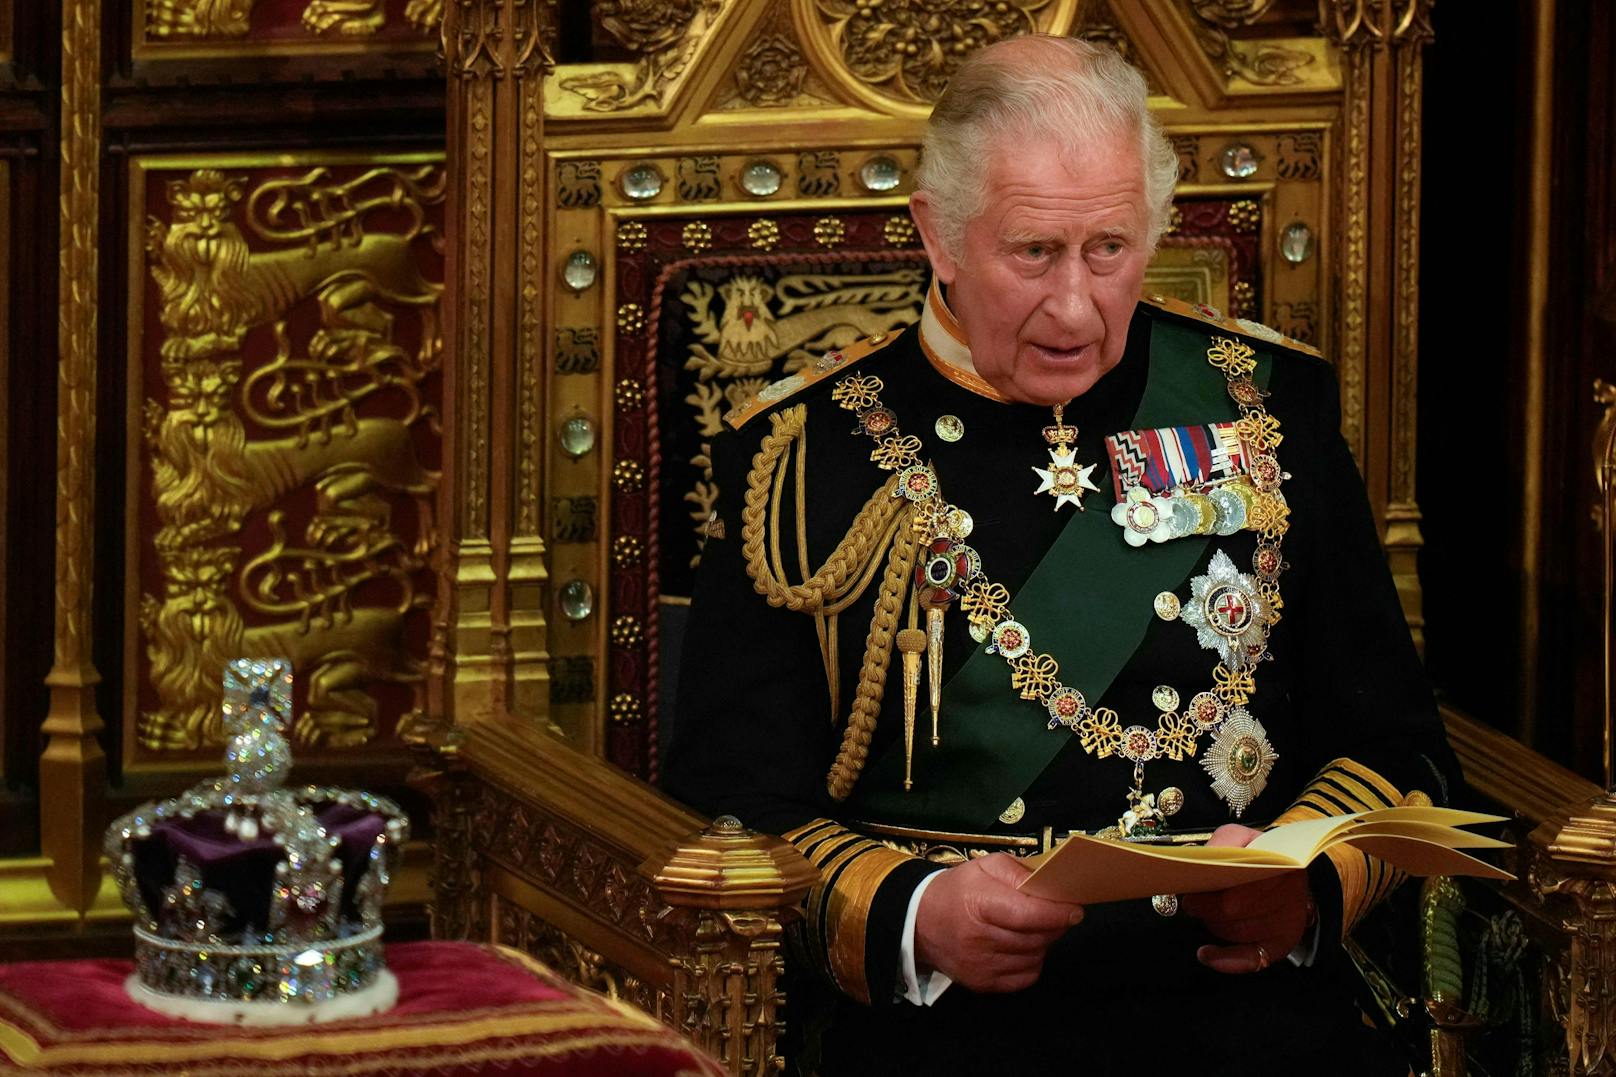 König Charles III. ist in gewissen Belangen besonders pingelig und macht seinem Personal damit das Leben schwer.